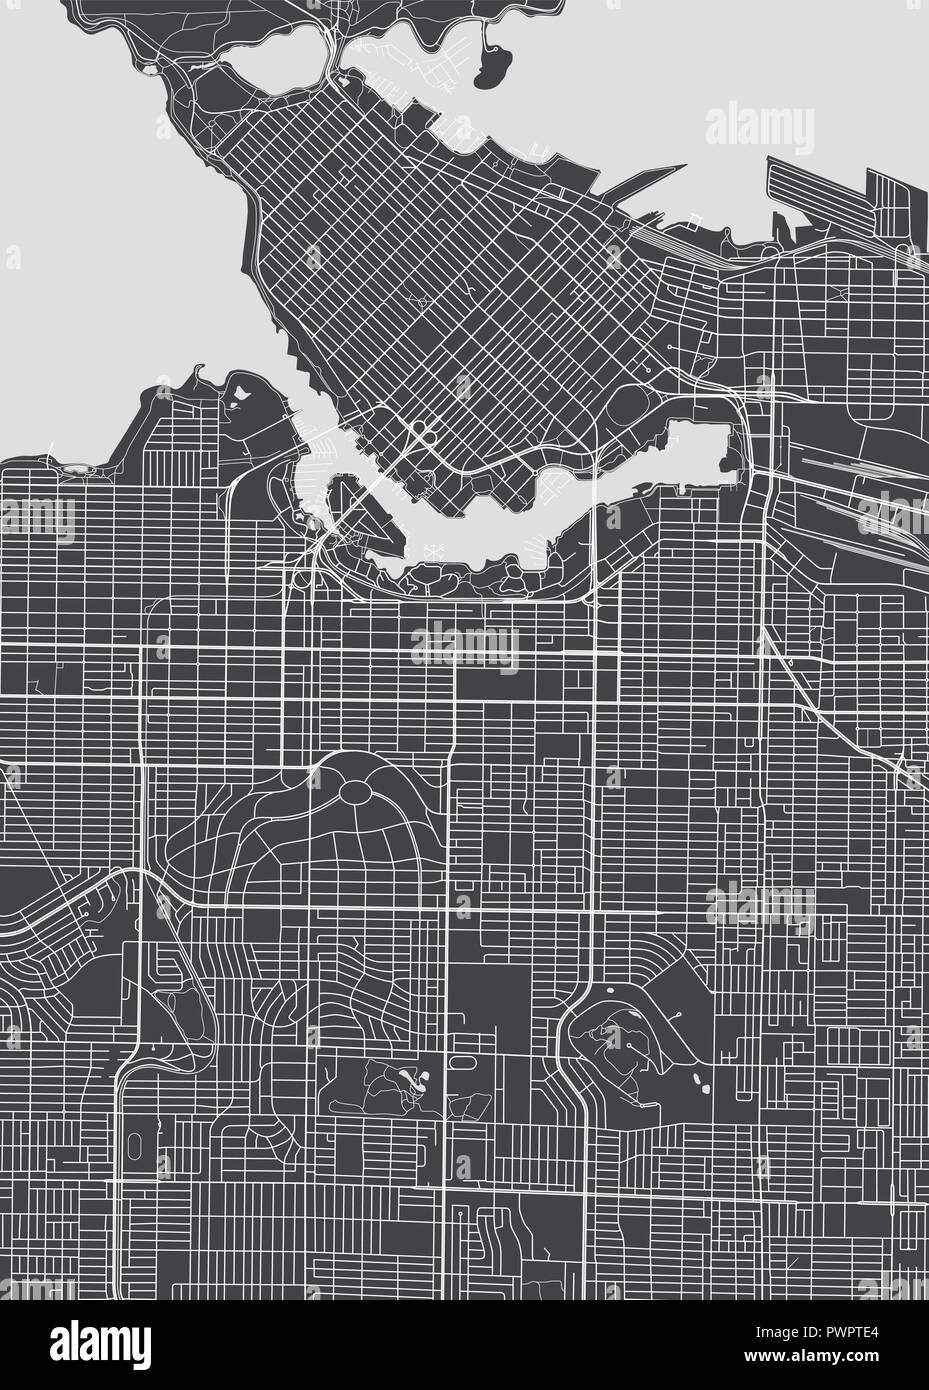 La ciudad de Vancouver, plan detallado plan detallado mapa de vectores de la ciudad, ríos y calles Ilustración del Vector